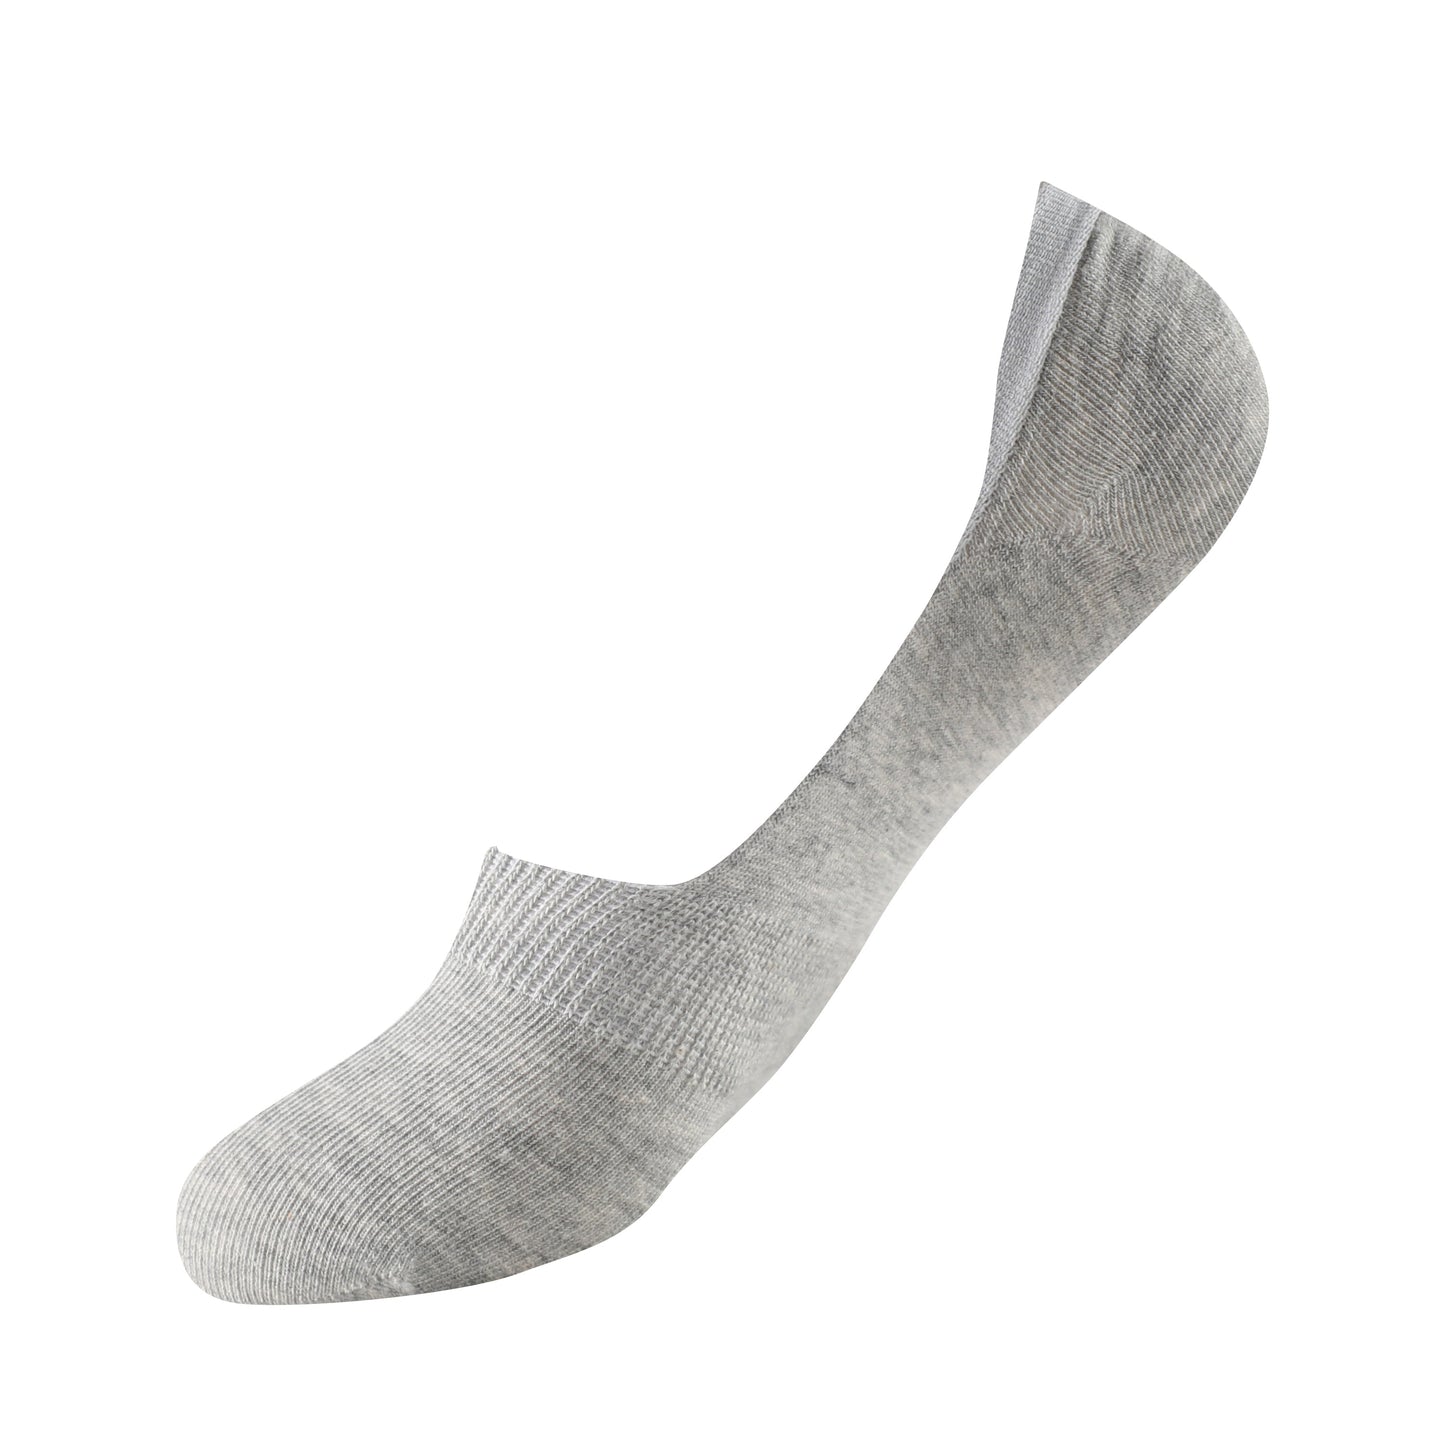 Calcetines de caña baja tipo básico talla de la 35 a la 45 modelo “Super invisibles”